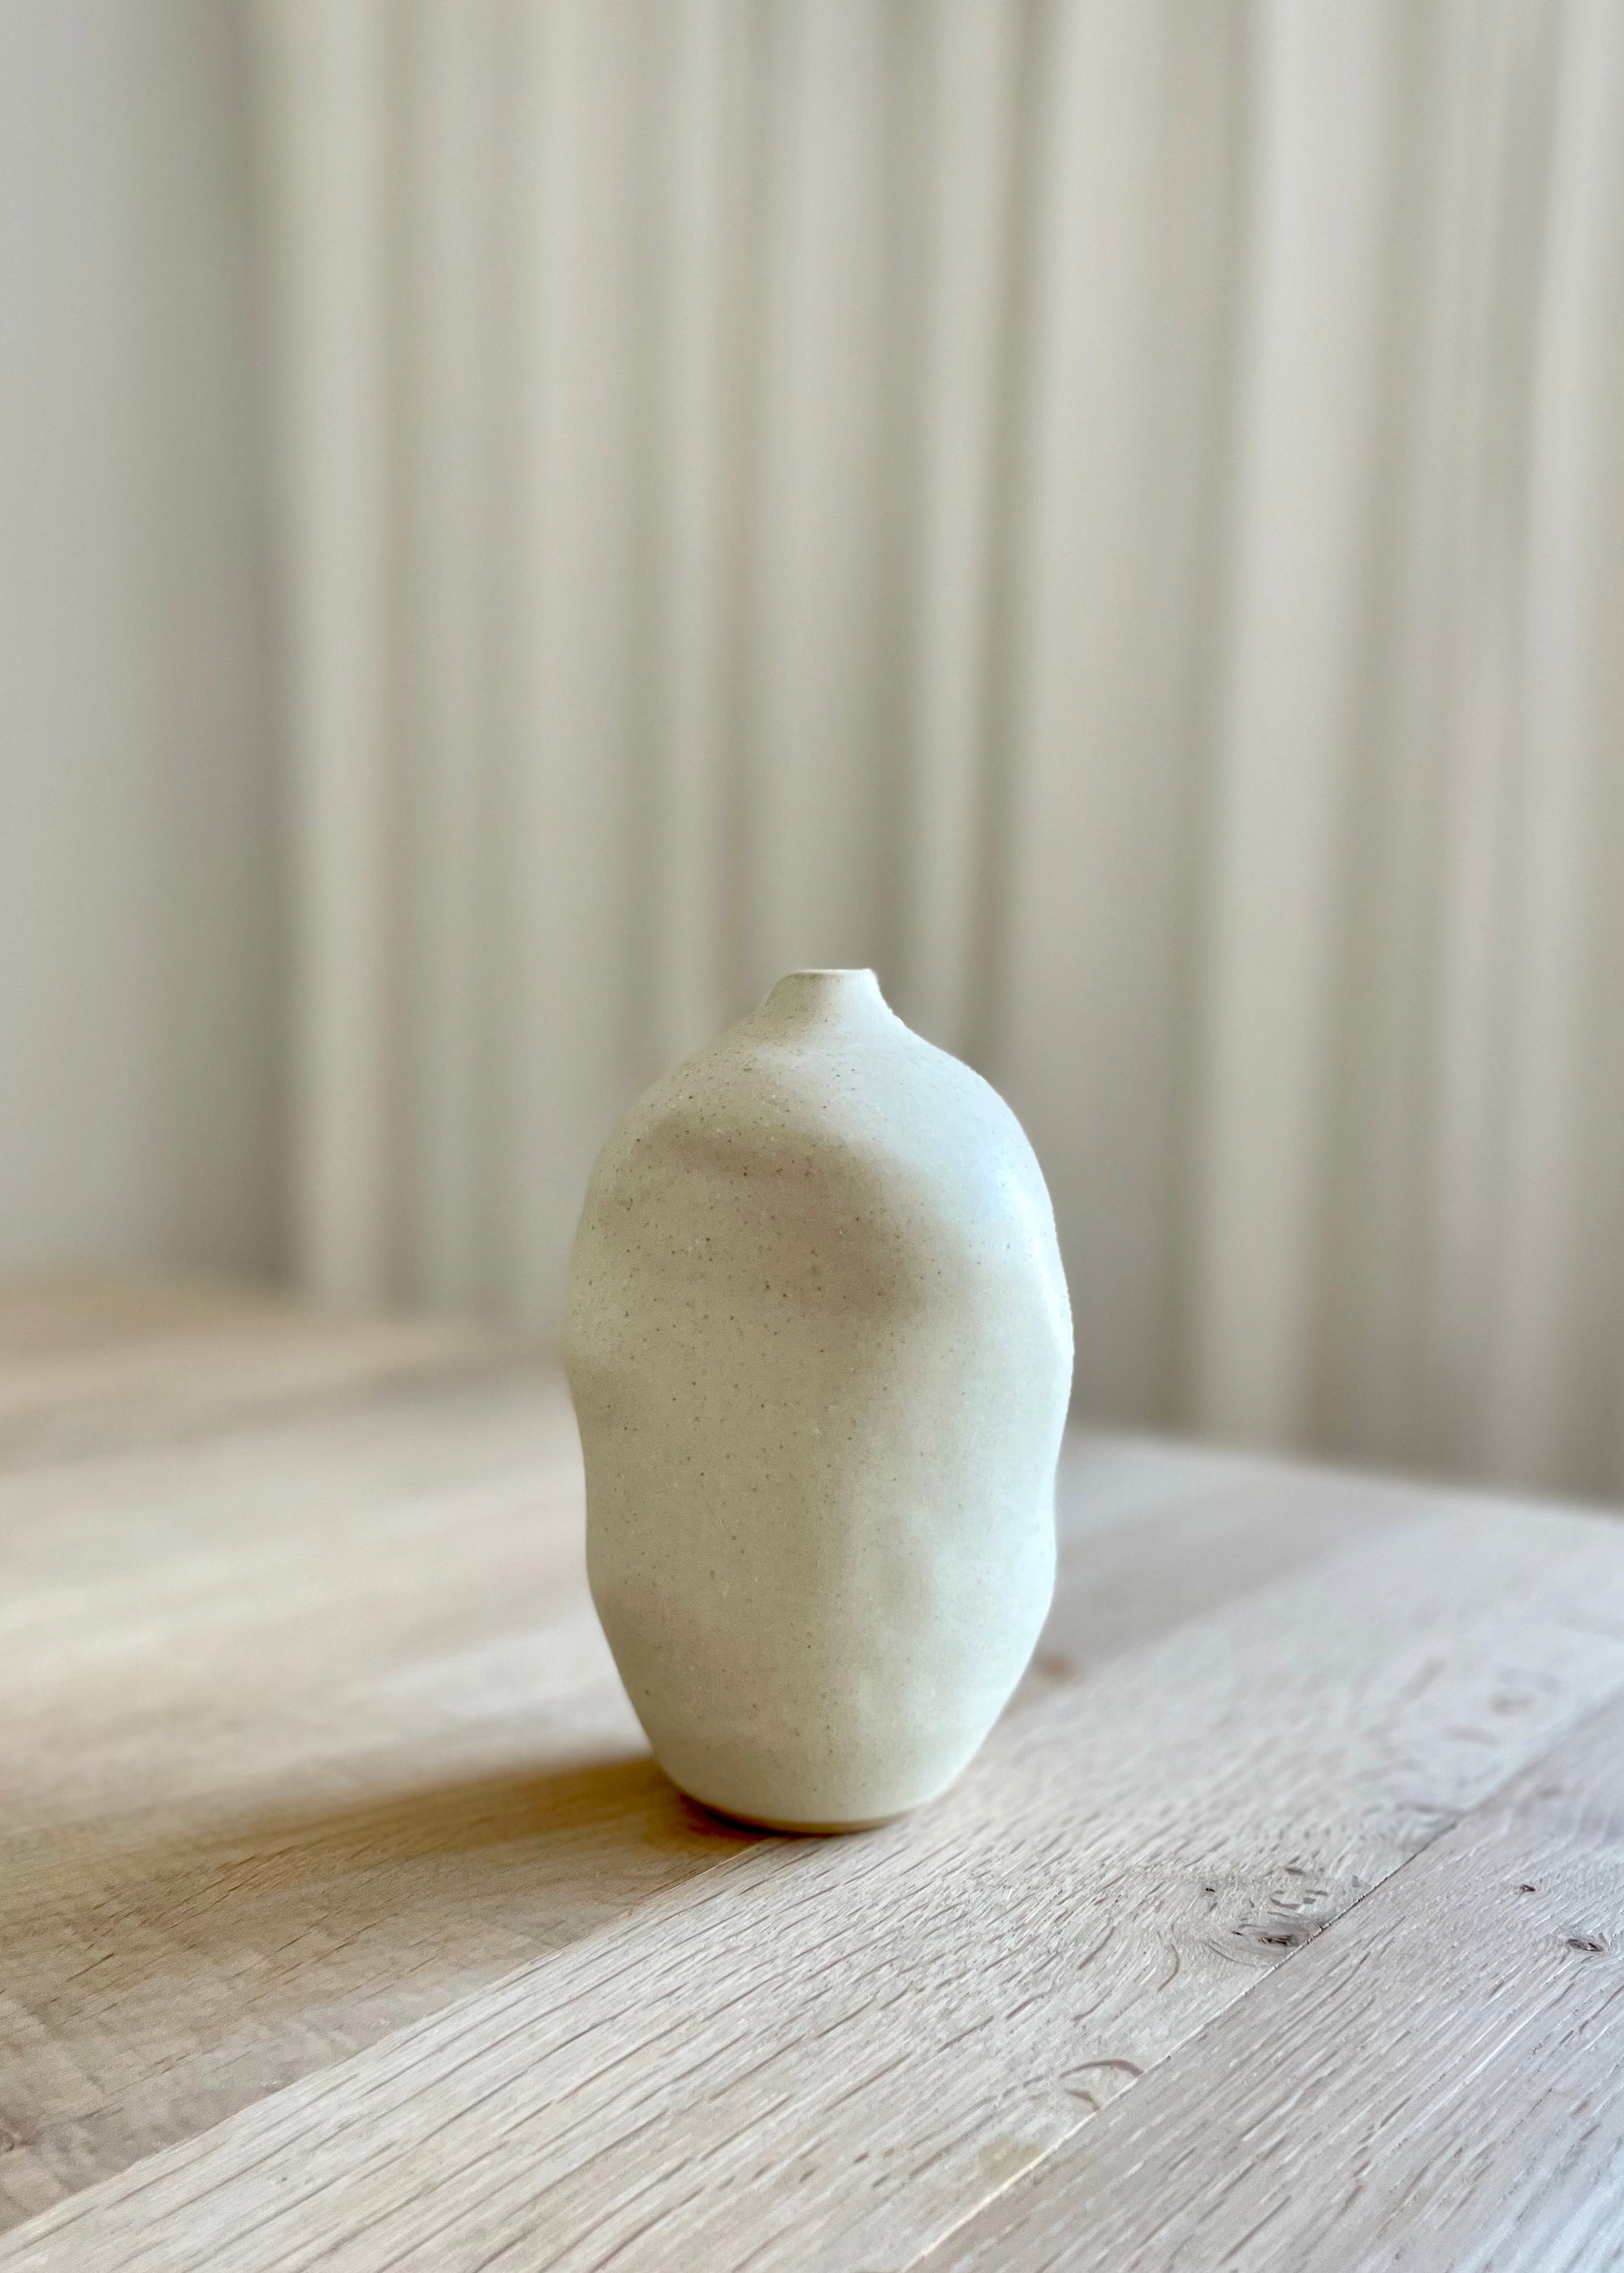 Viki Weiland Vase